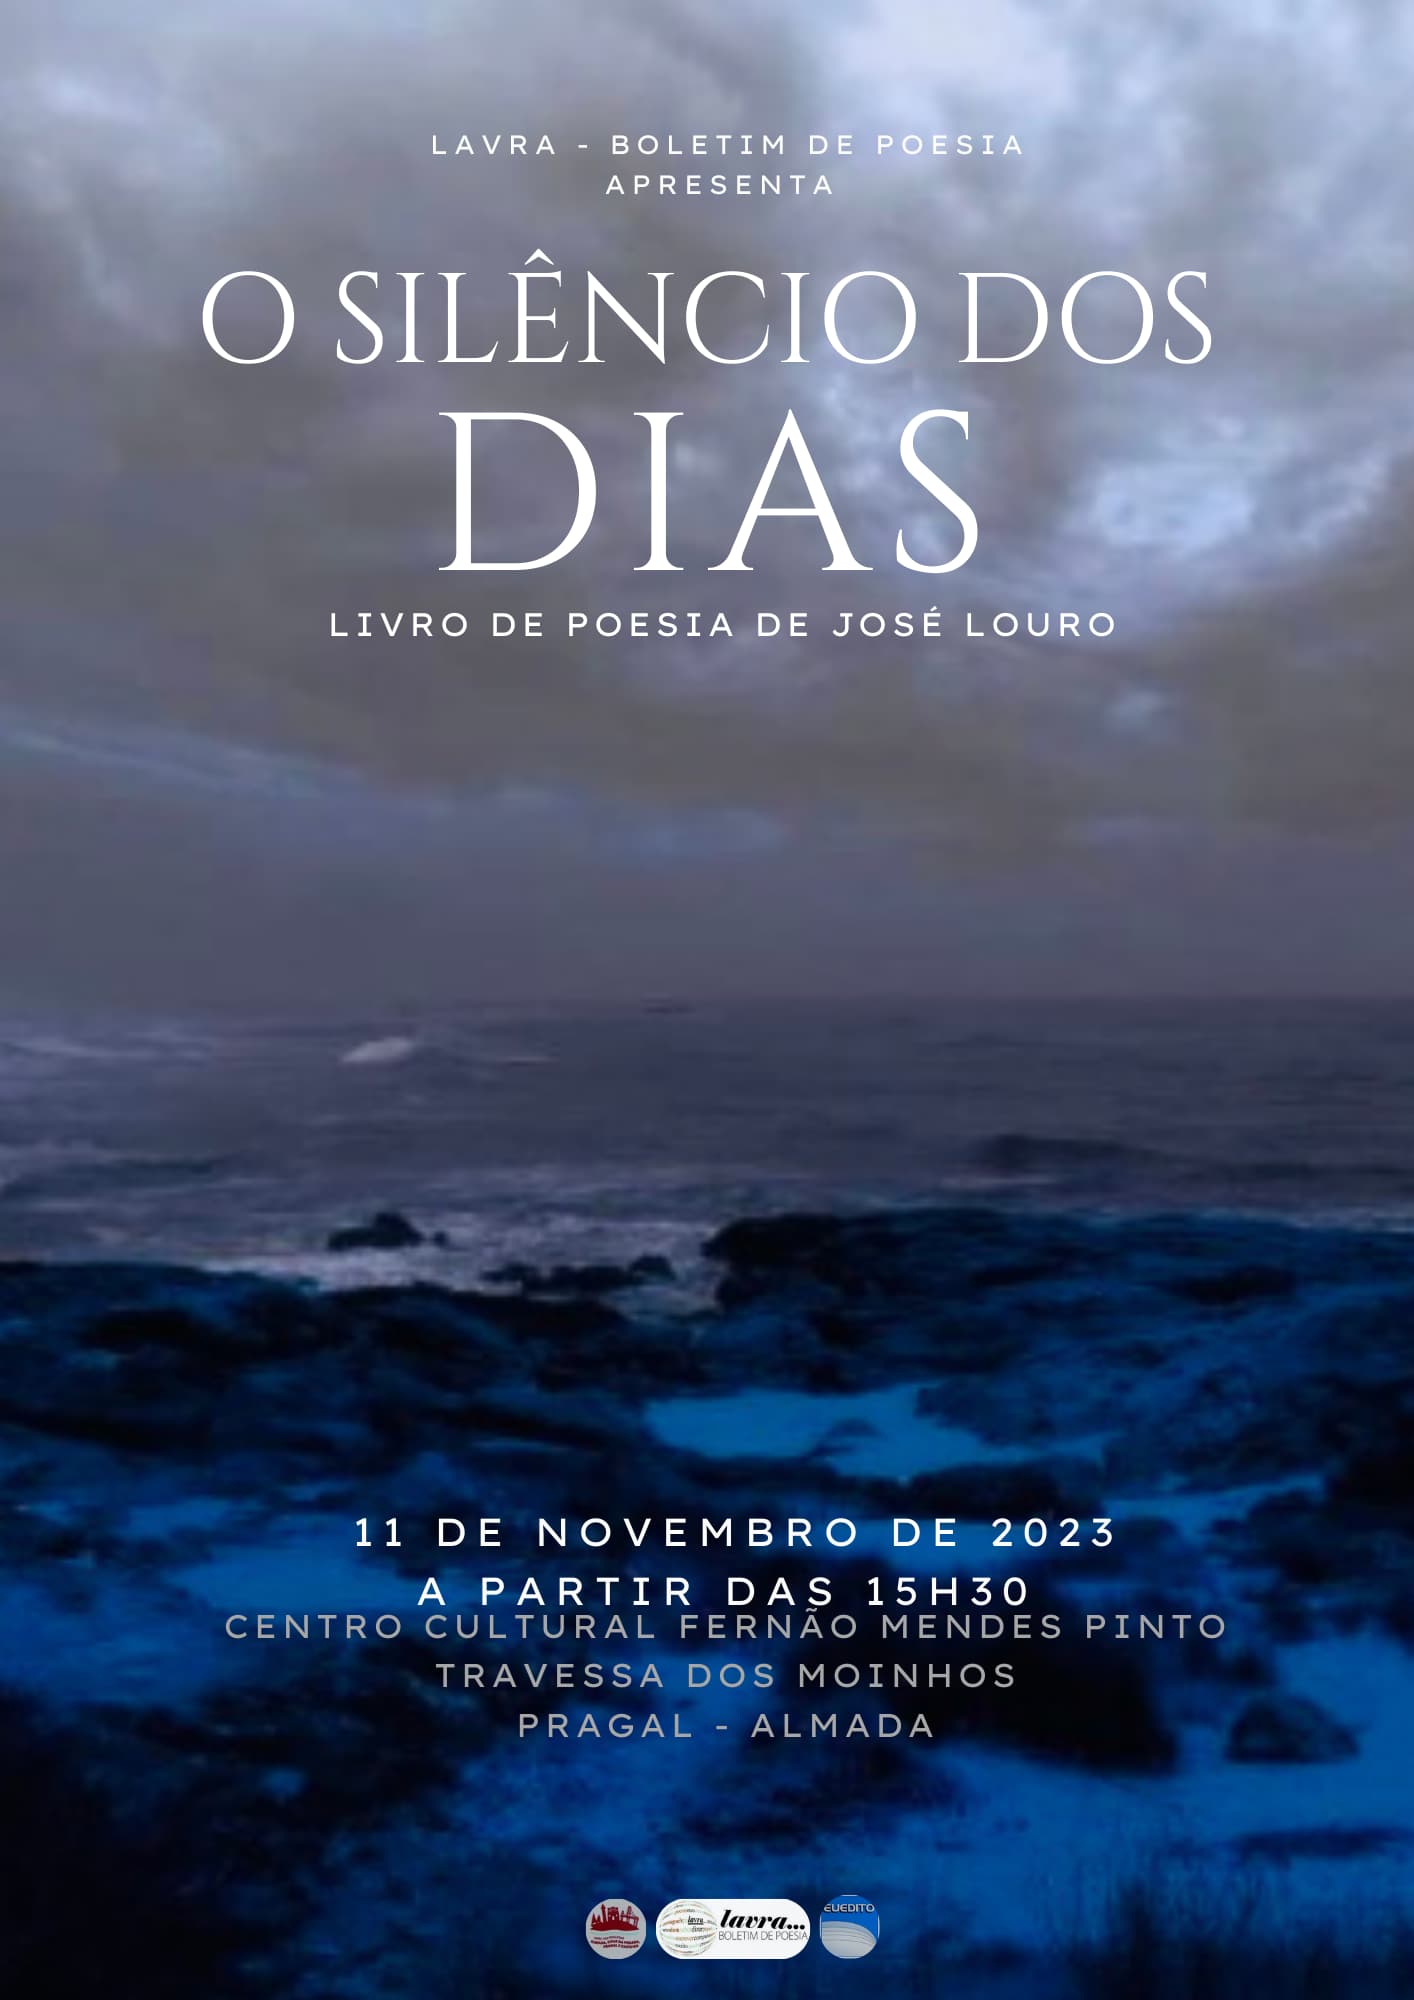 Lançamento e Apresentação Livro de Poesia “O Silêncio dos Dias” de José Louro